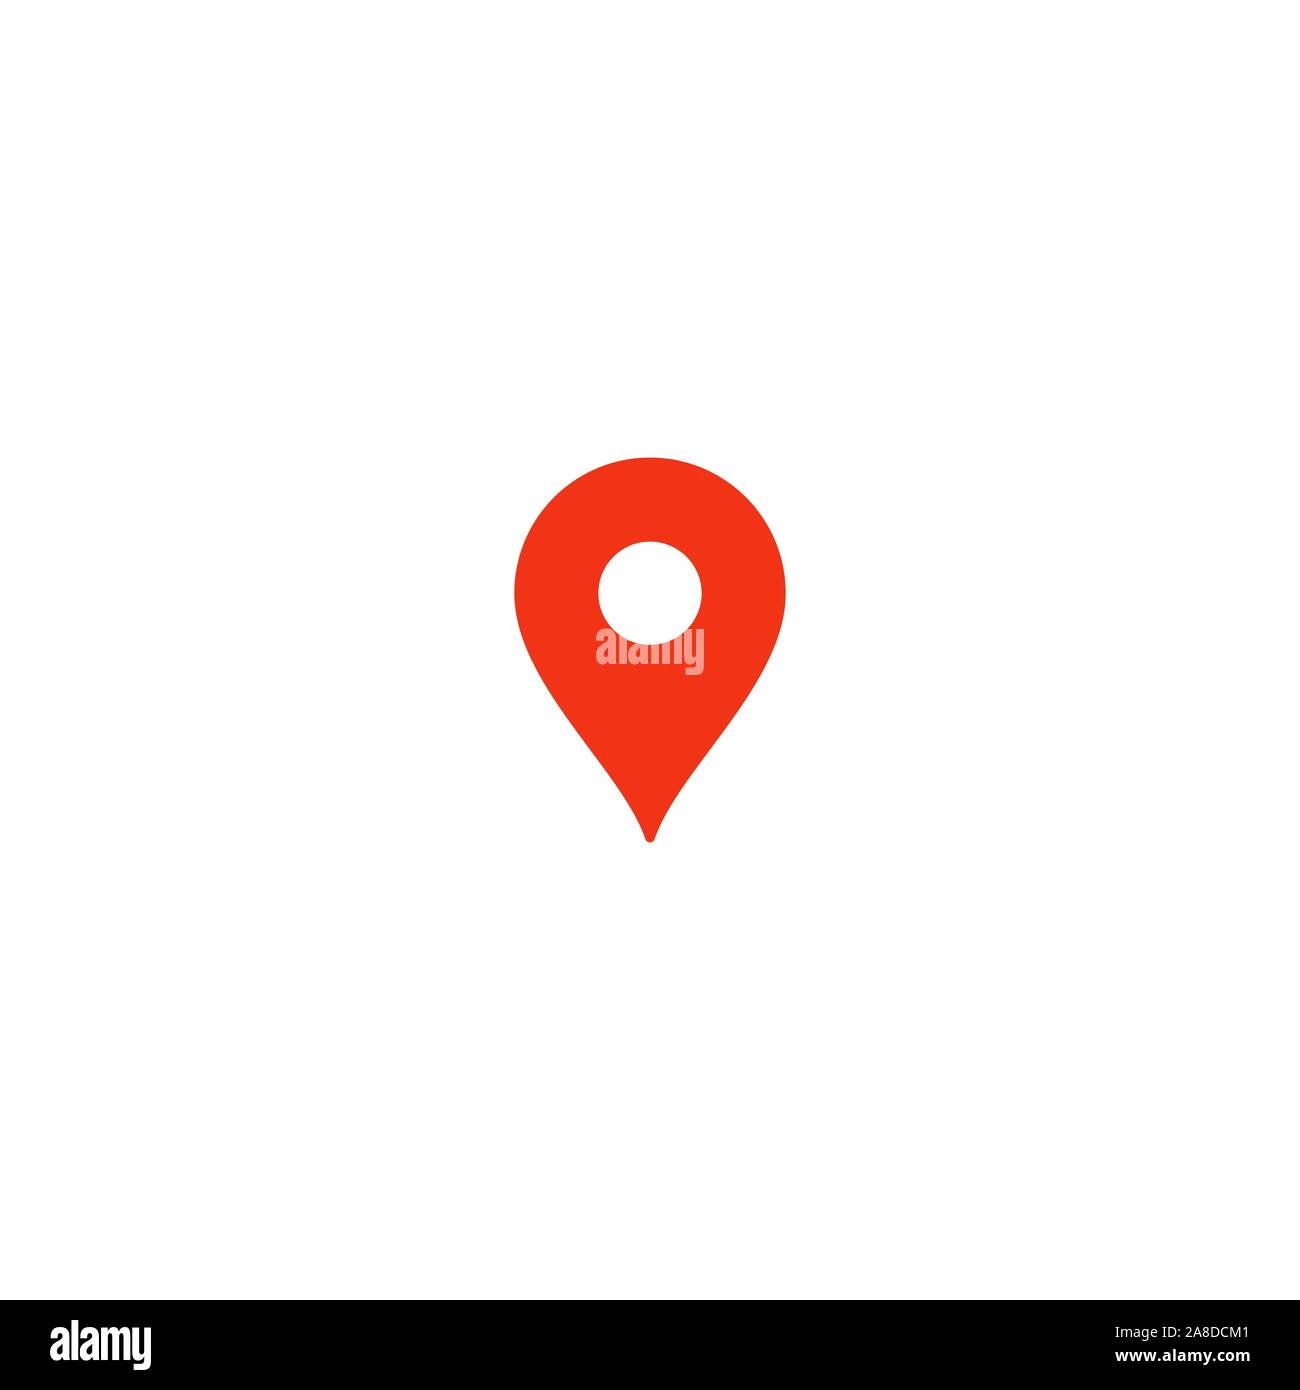 Lage pin Symbol. Rote Zeiger. Einfache flache point template. Infografik Gestaltungselement für Navigation app, Ort auf der Karte markieren. Isolierte Vektor Stock Vektor